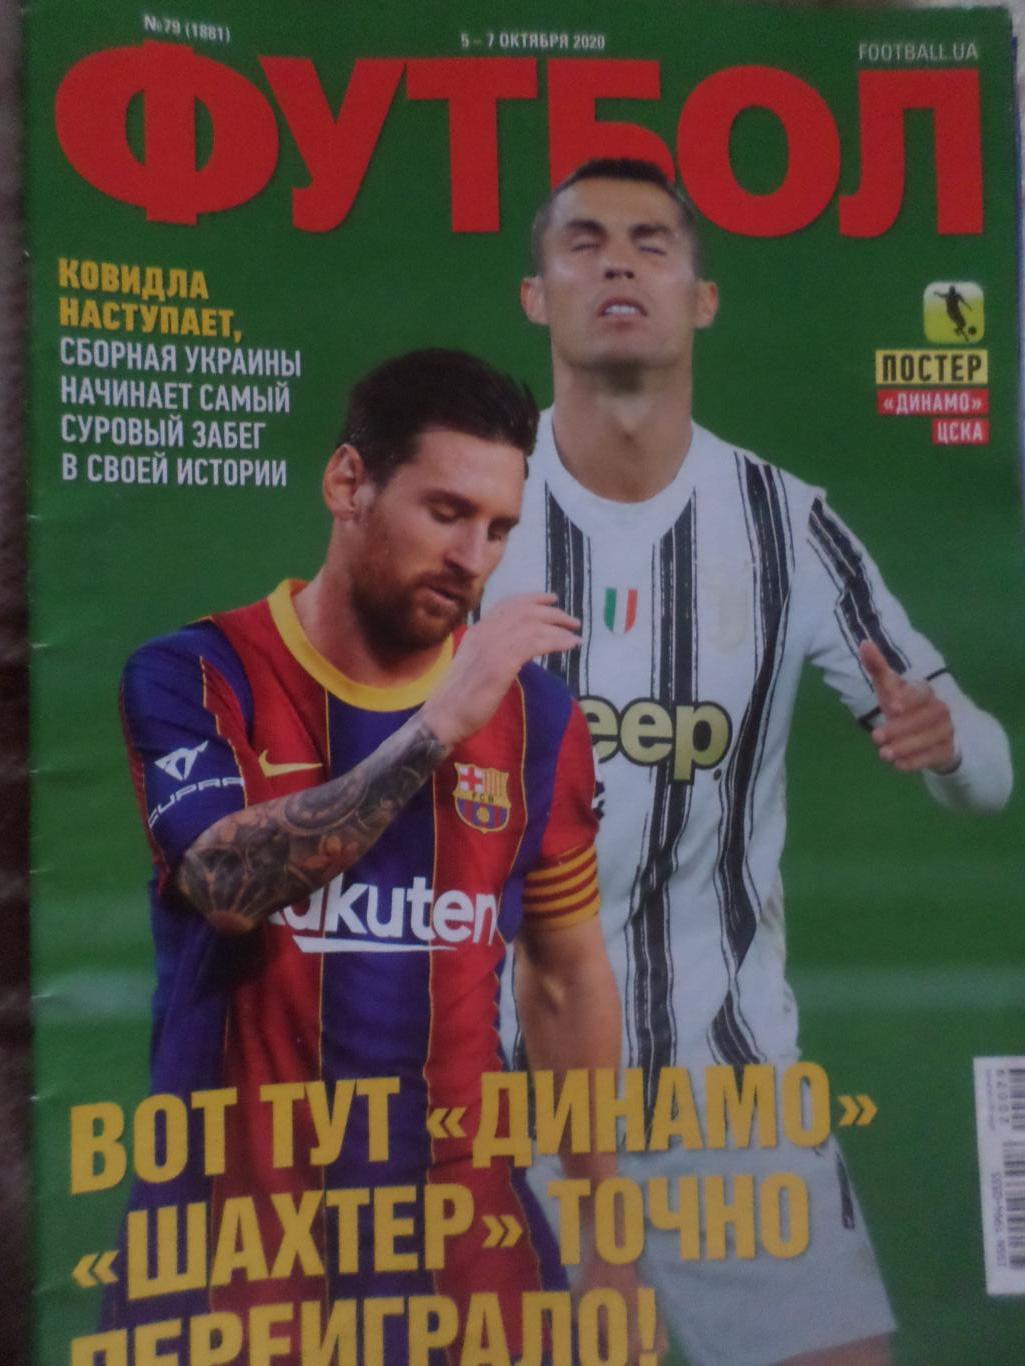 Еженедельник Футбол, Киев, № 79 2020 год